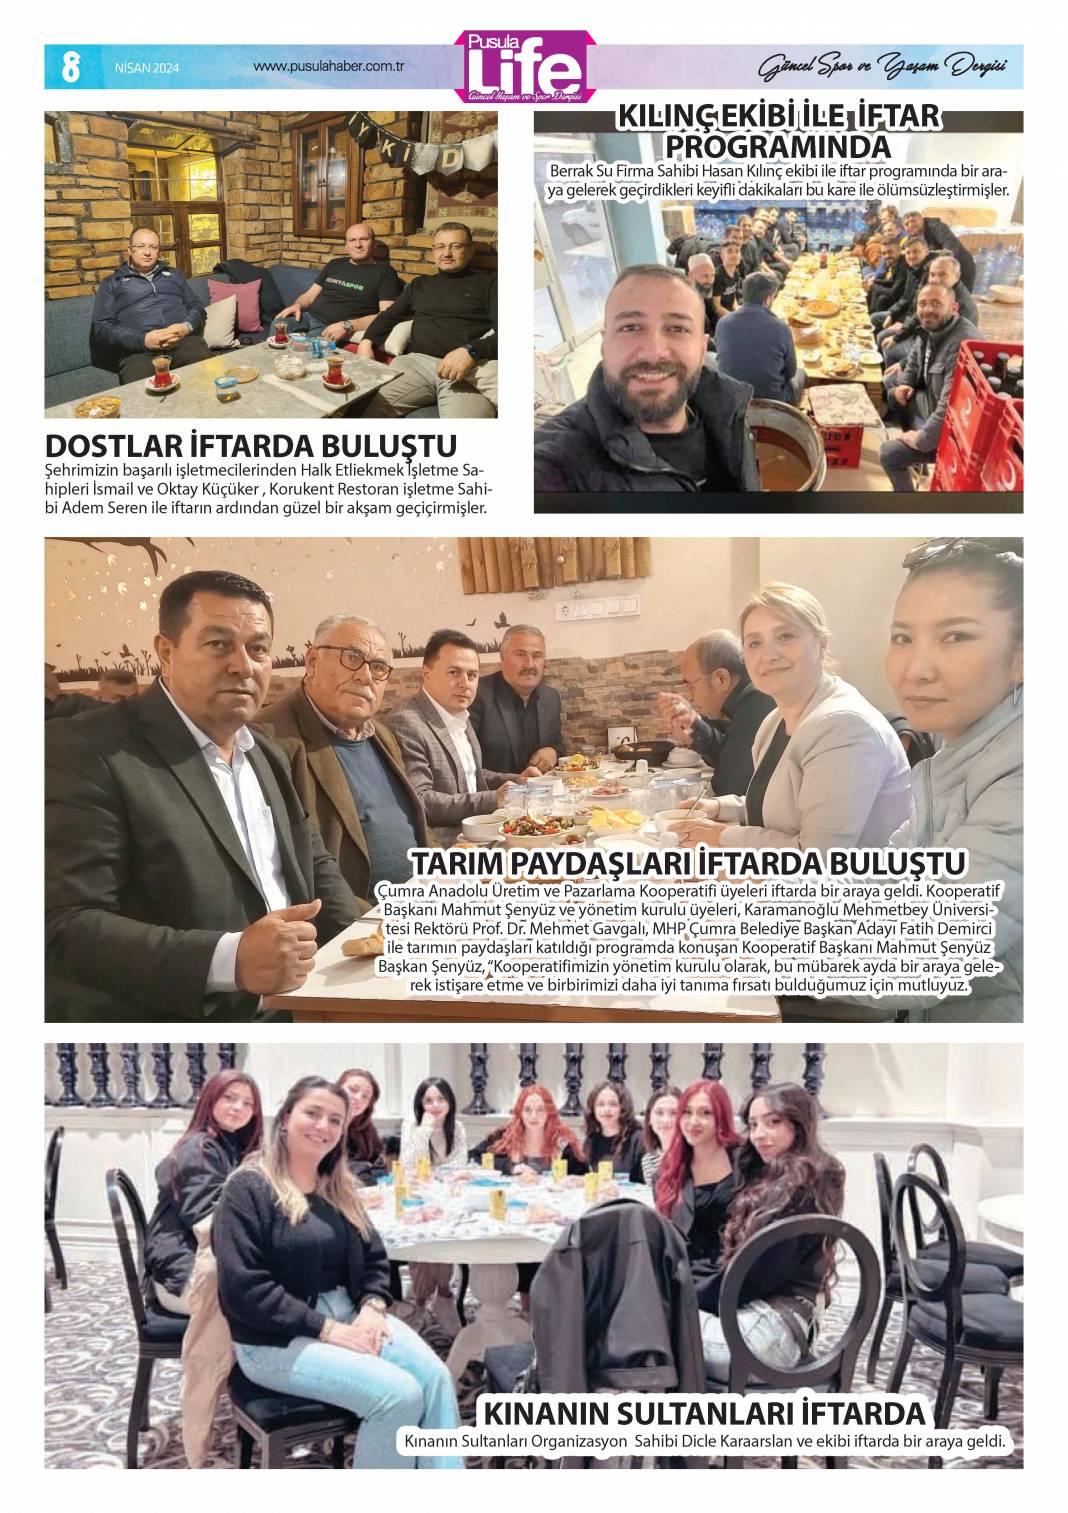 PS Life, Konya'daki Ramazan'ı yansıttı 8